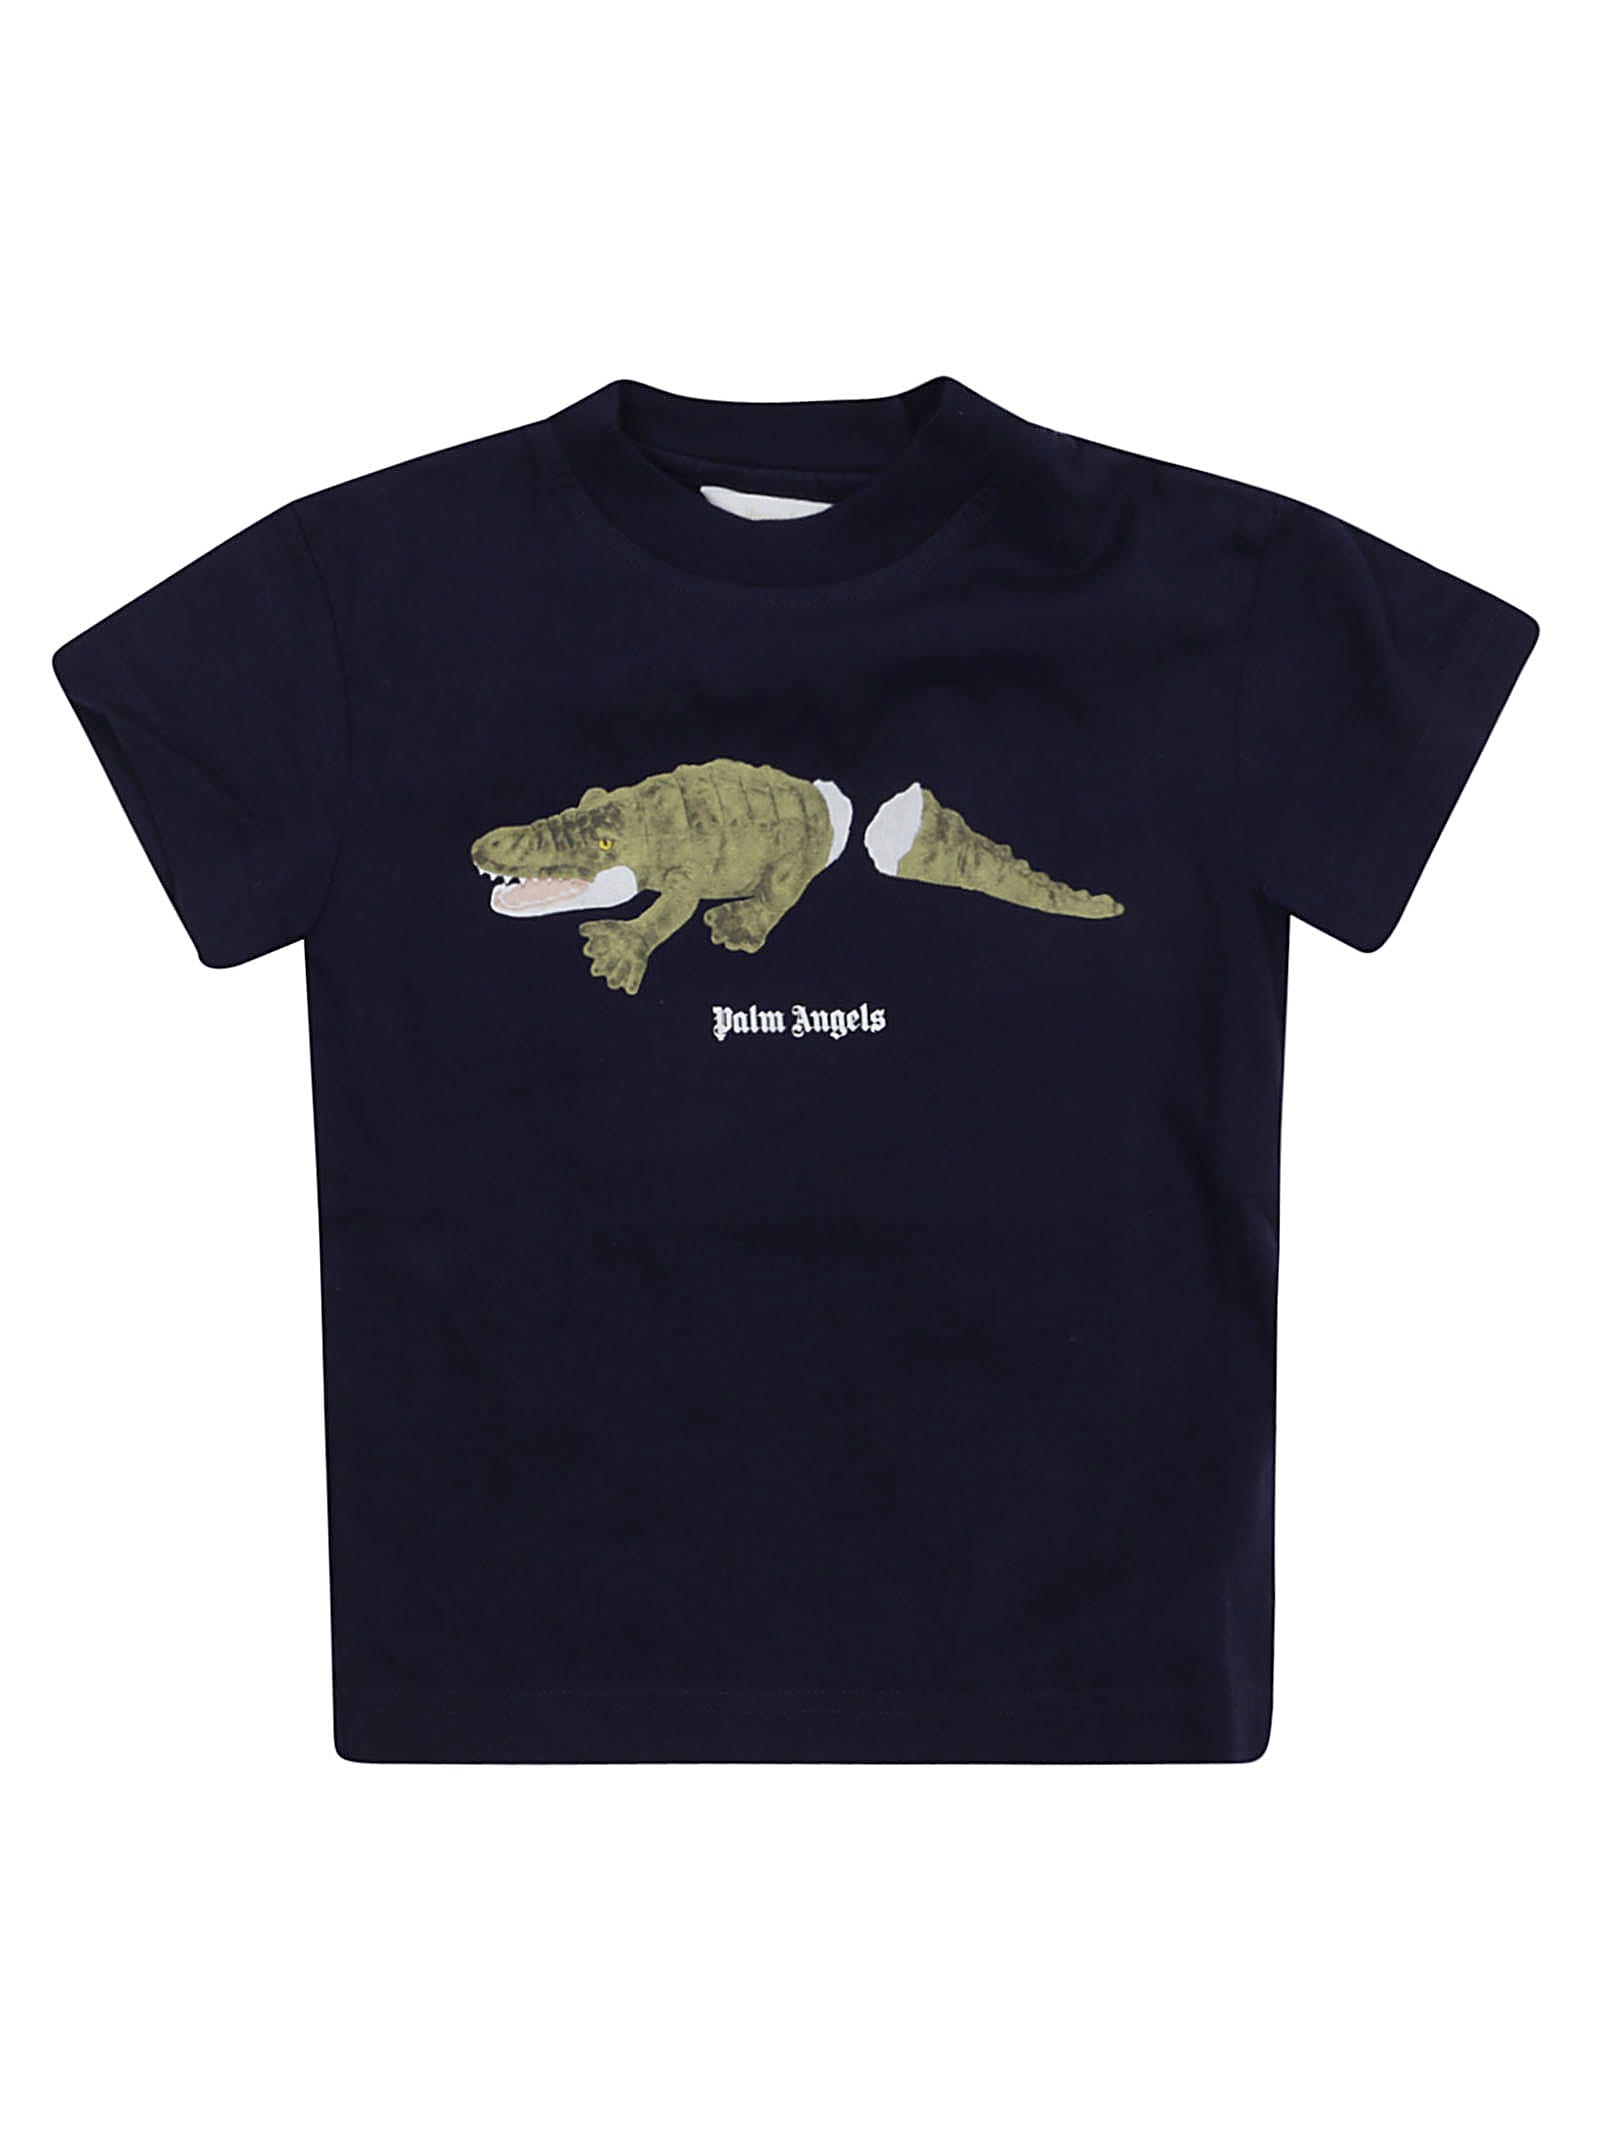 Palm Angels Crocodile T-shirt